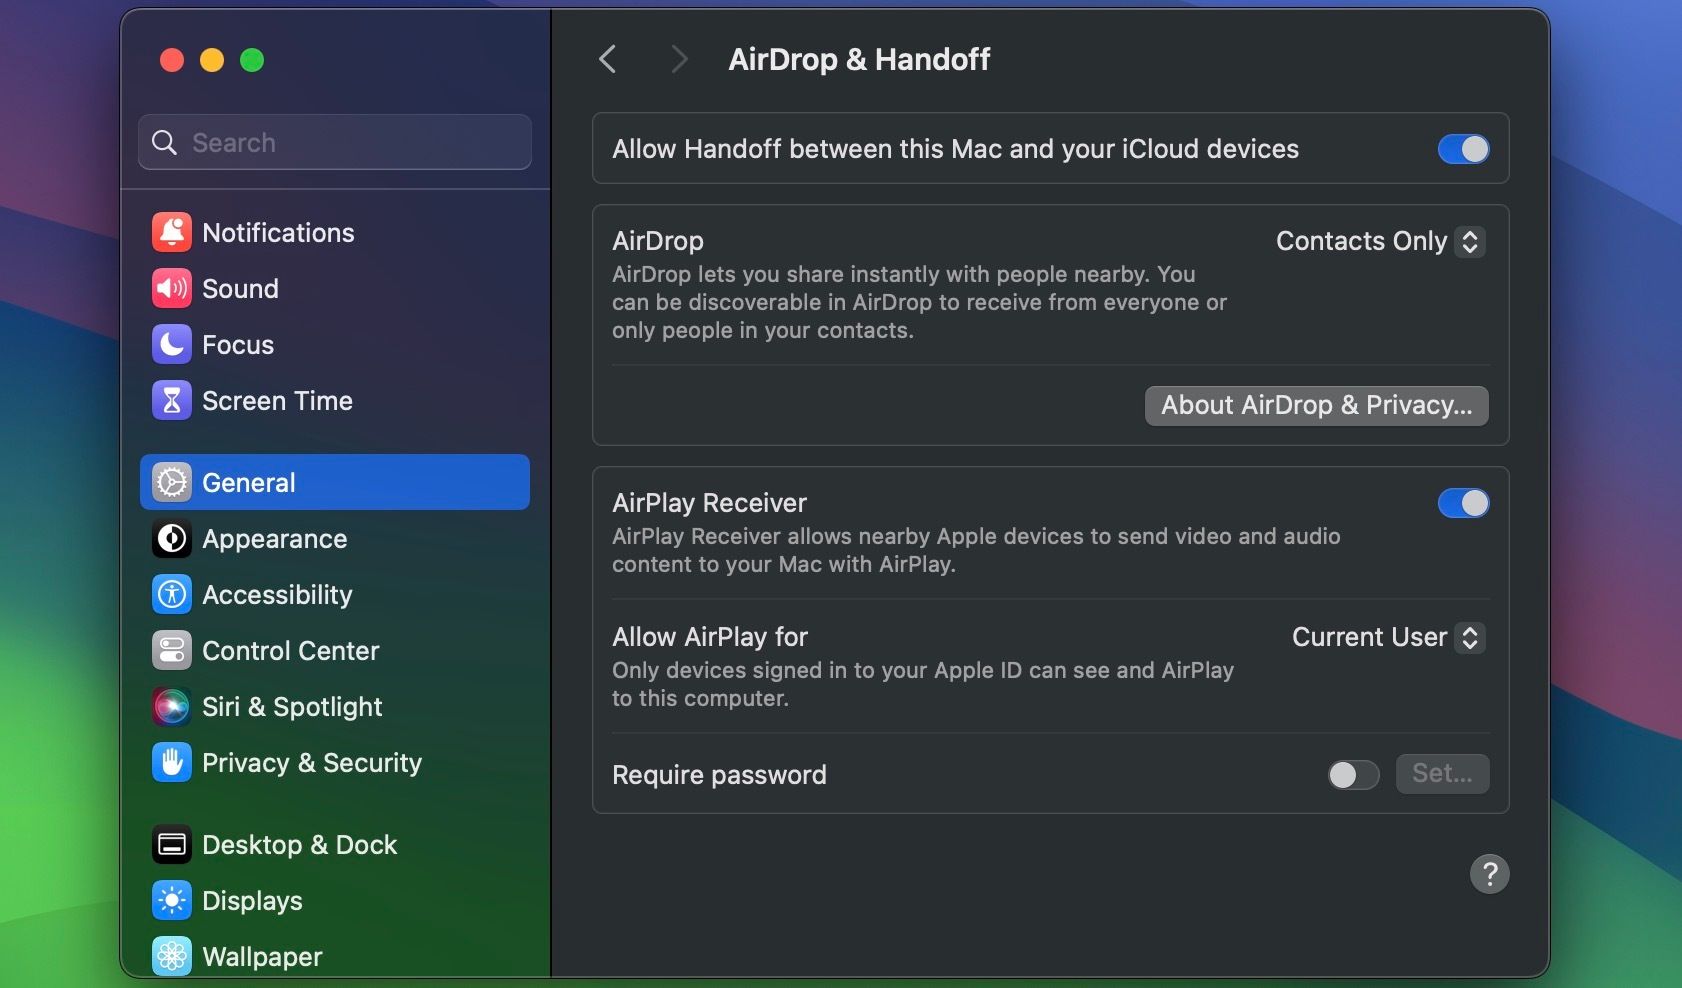 AirDrop & Handoff settings in macOS